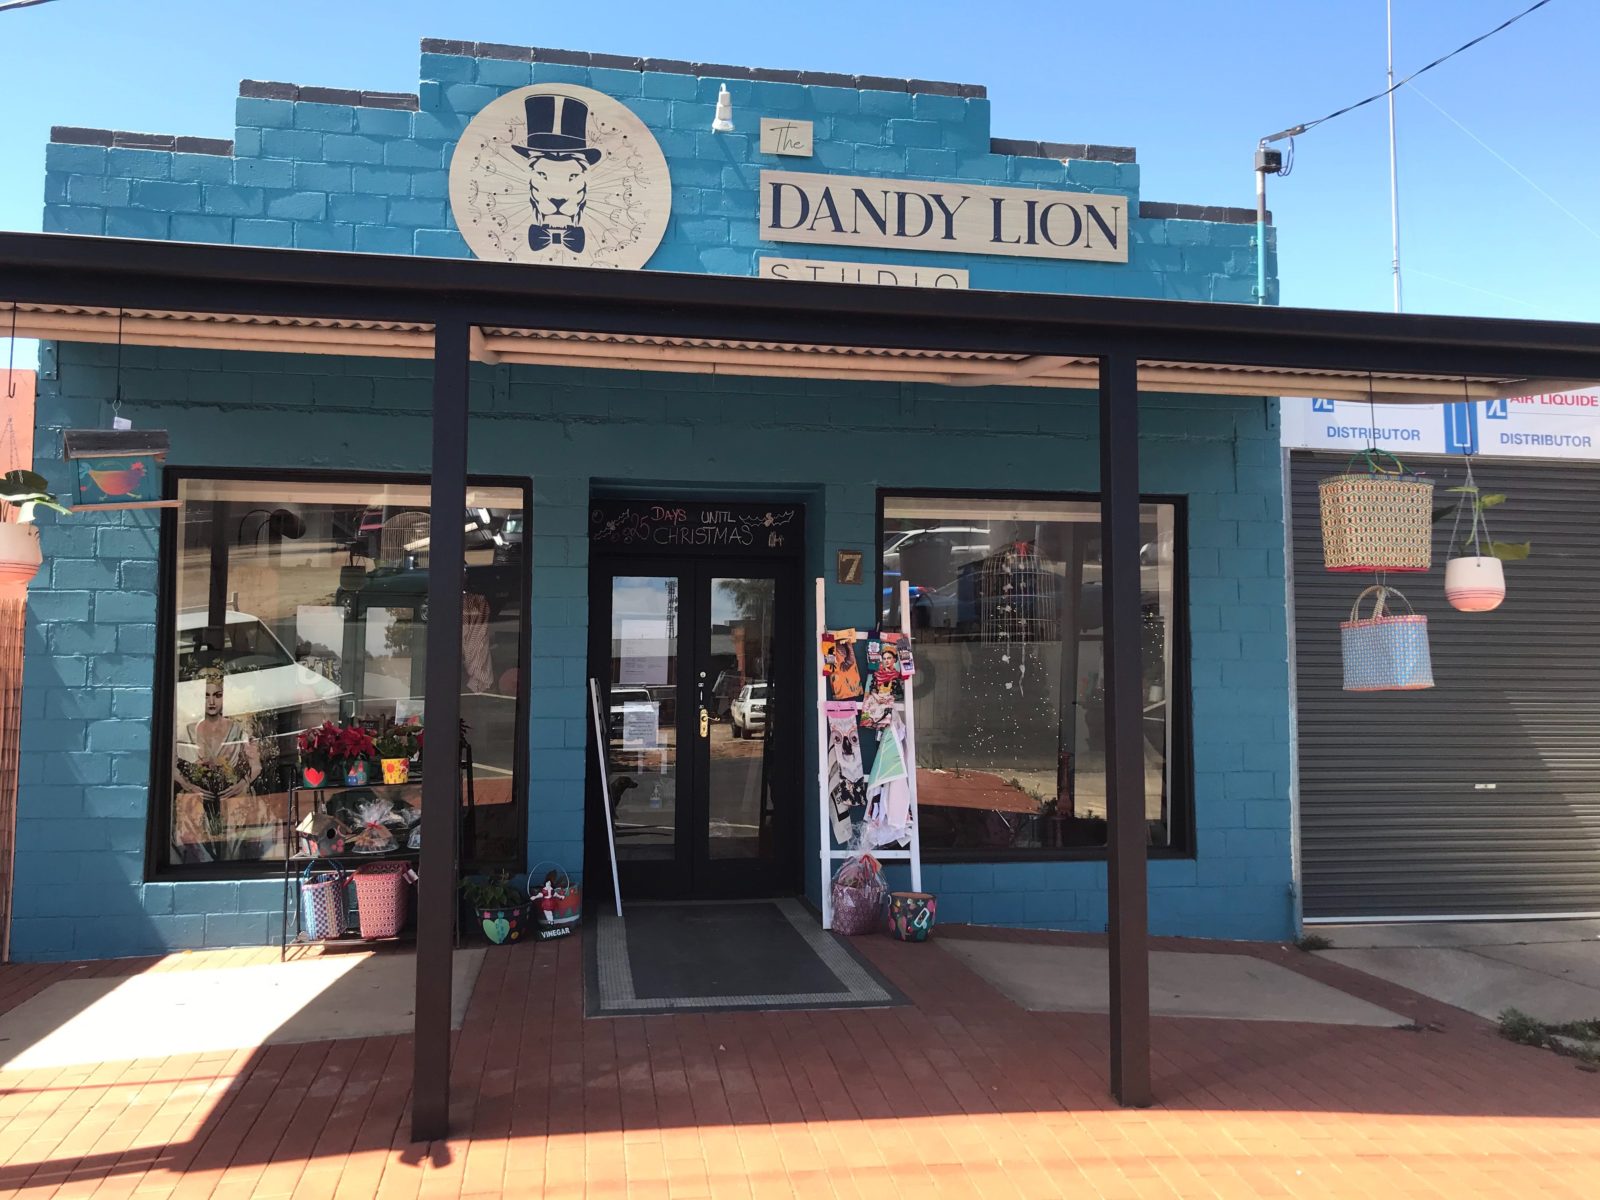 The Dandy Lion Studio Shop front